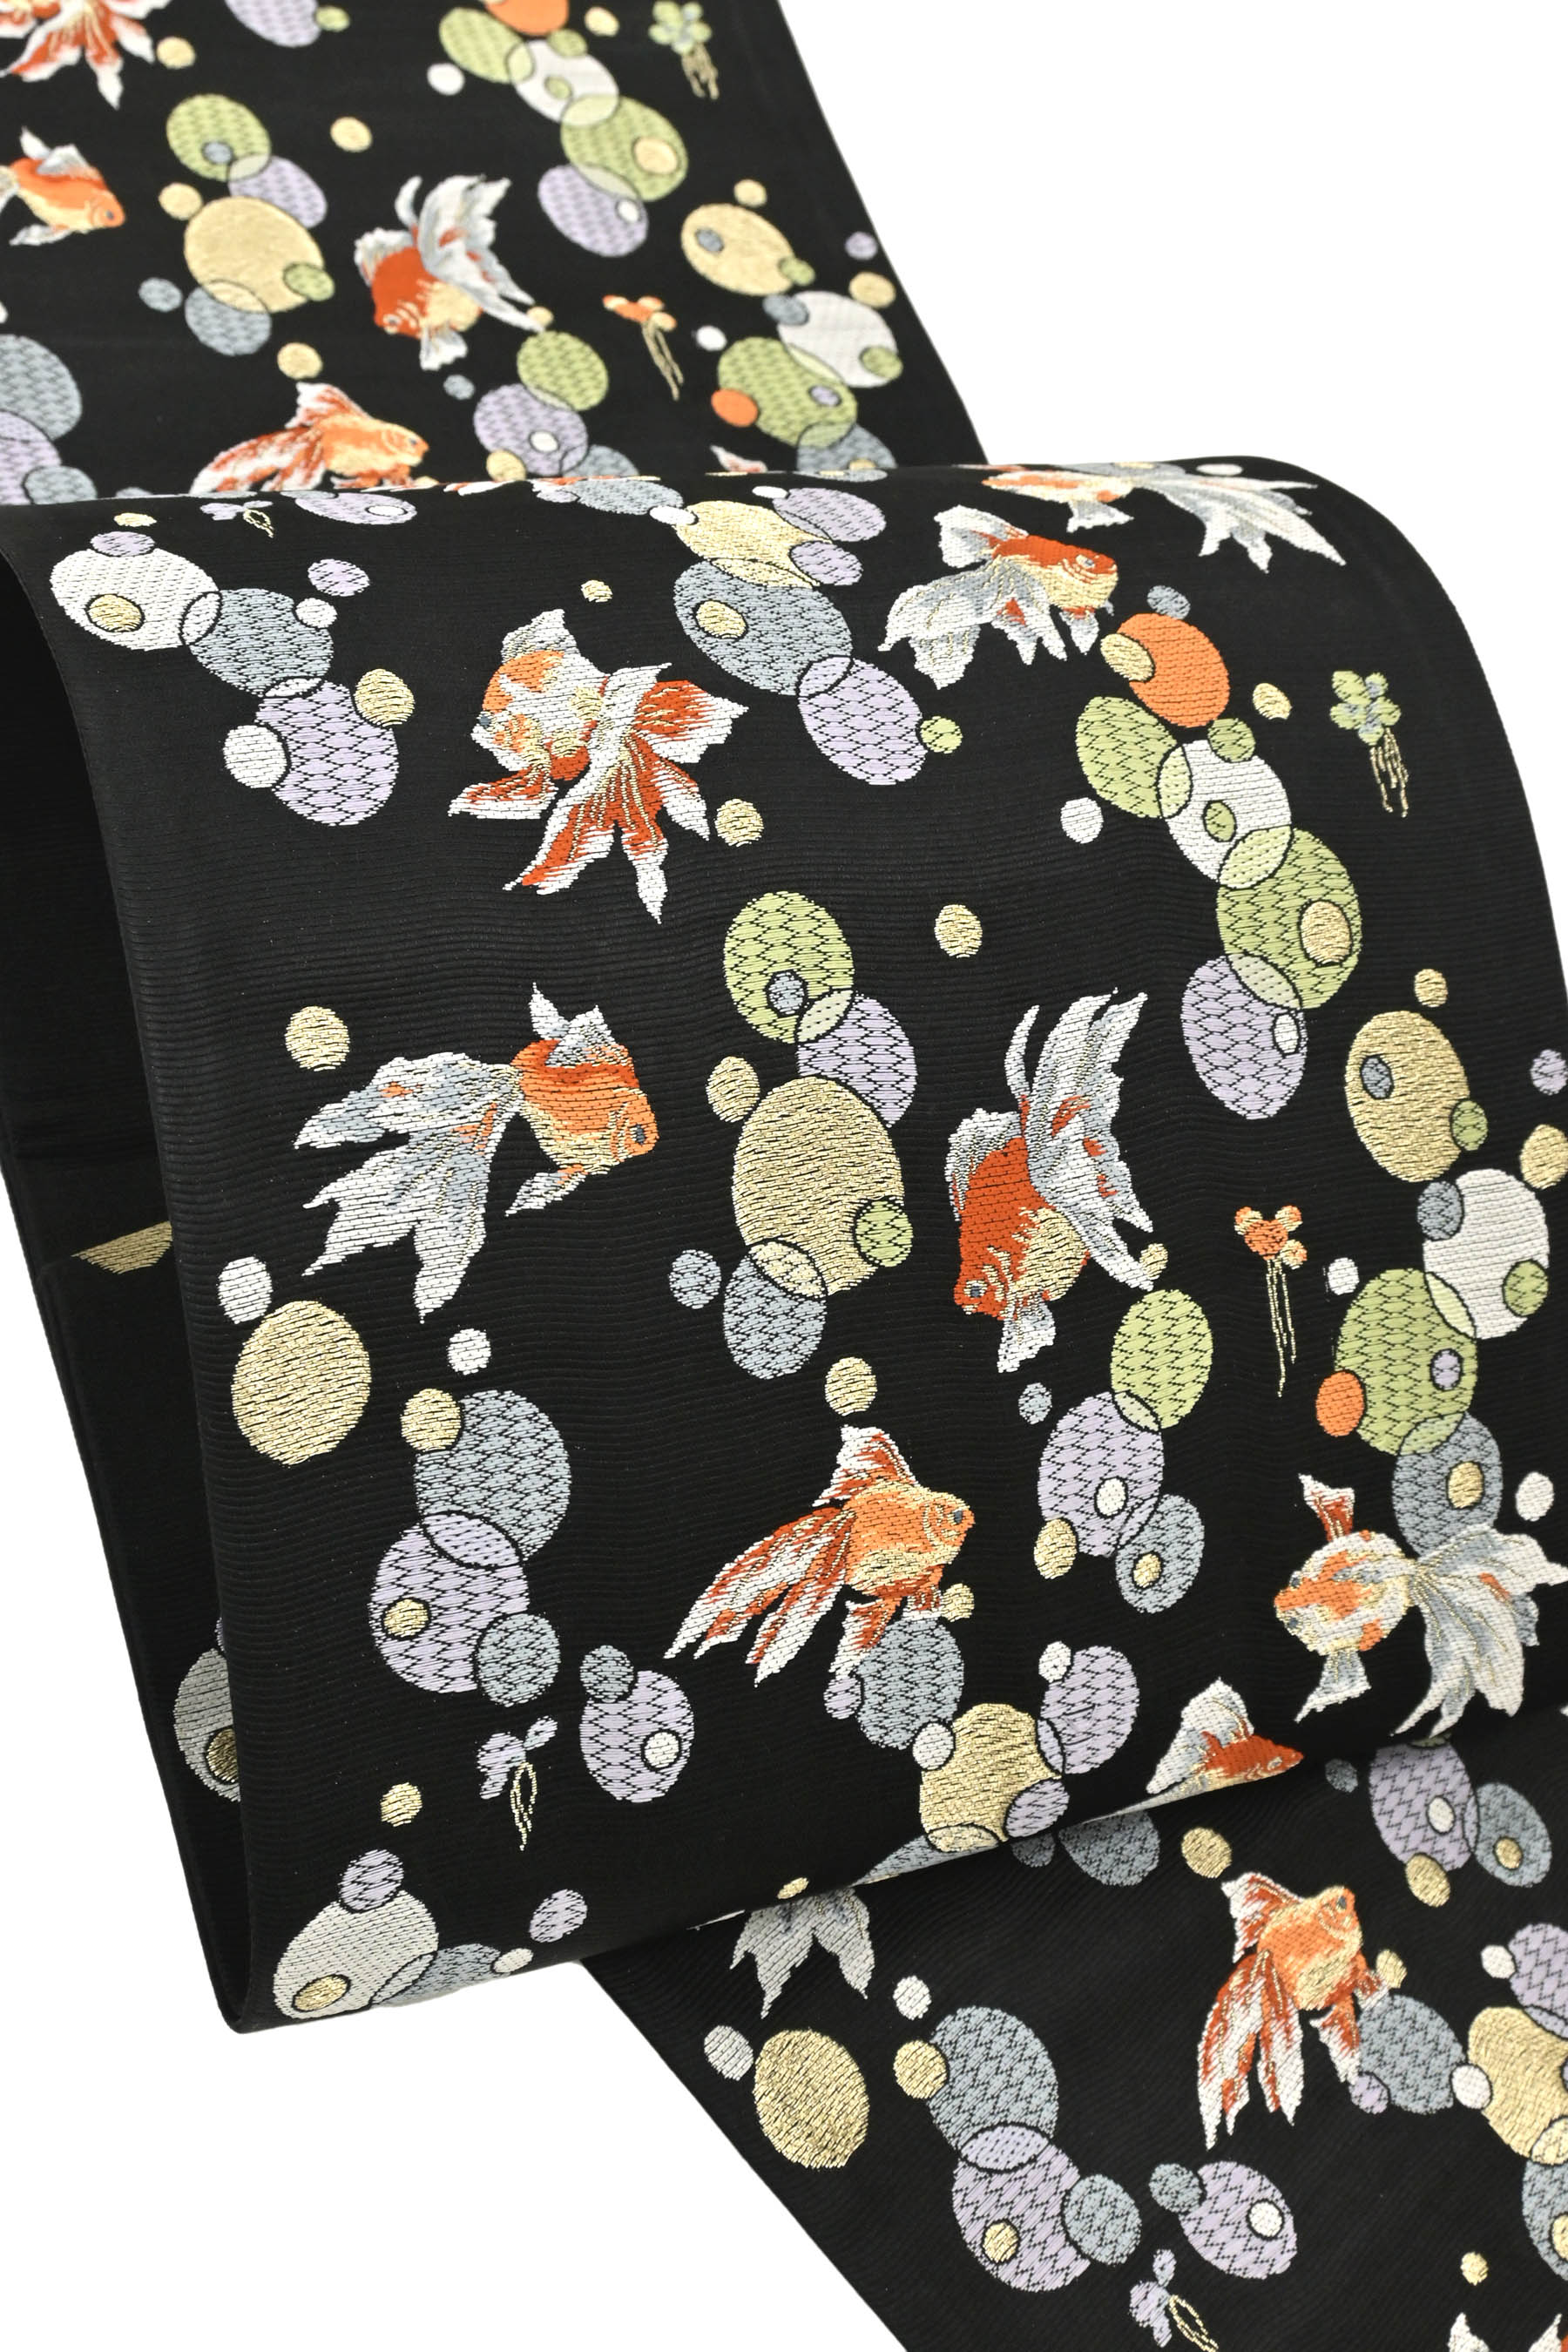 商品詳細 - 正絹西陣袋帯 「おいけの金魚」 京都きもの市場【公式】